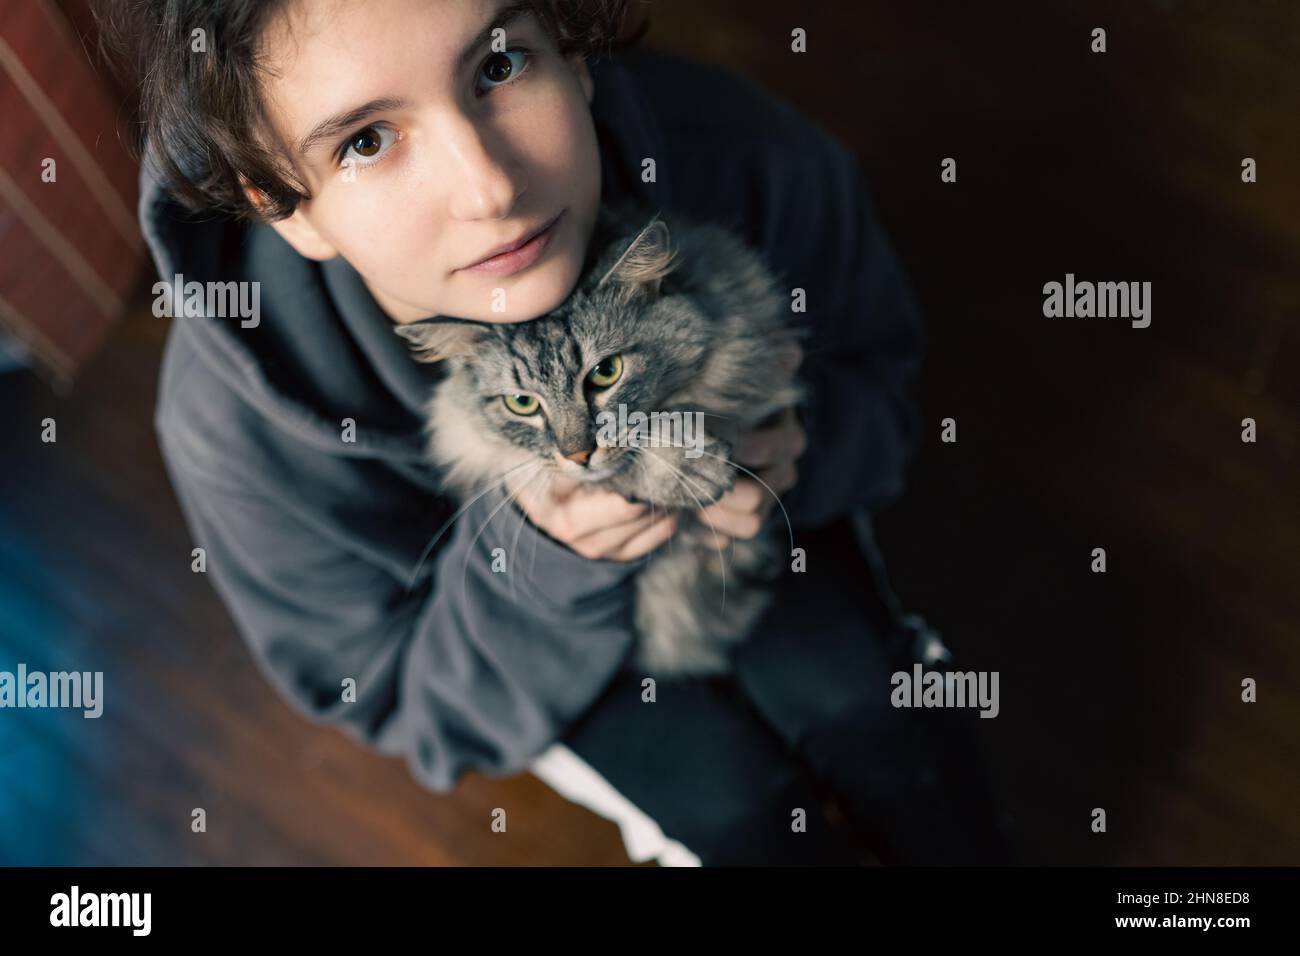 ragazza adolescente in casa casual felpa seduta sul pavimento, tiene amato gatto grigio animale domestico in braccia, abbracci, mostra amore per l'animale. vista dall'alto verso il basso. Foto Stock